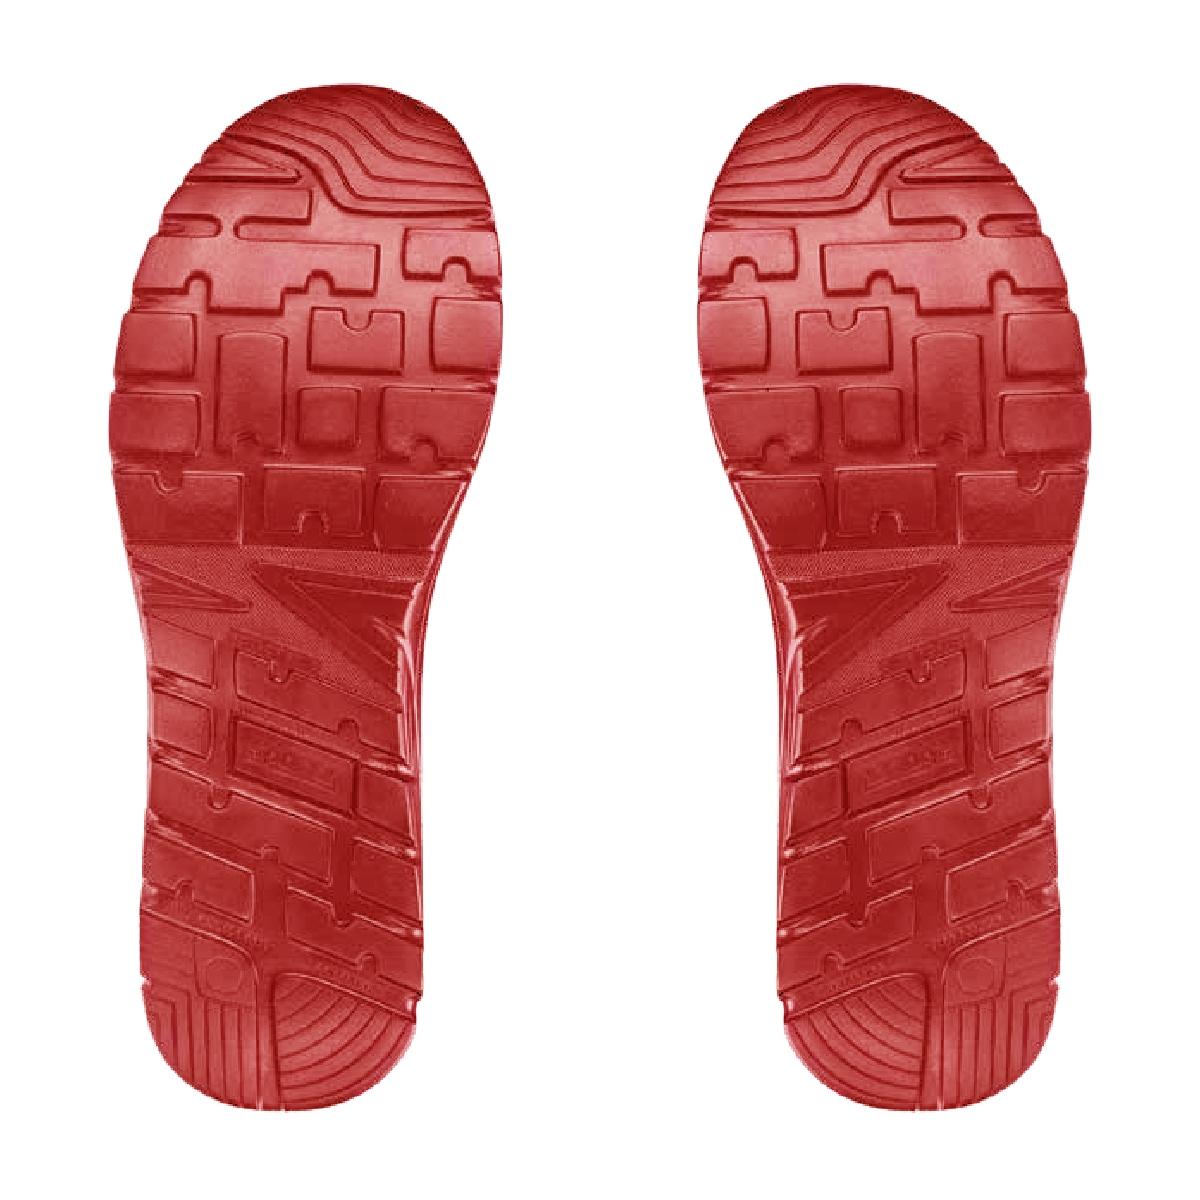 Zapatillas de Seguridad SPARCO Nitro - S3 - Rojo y Negro